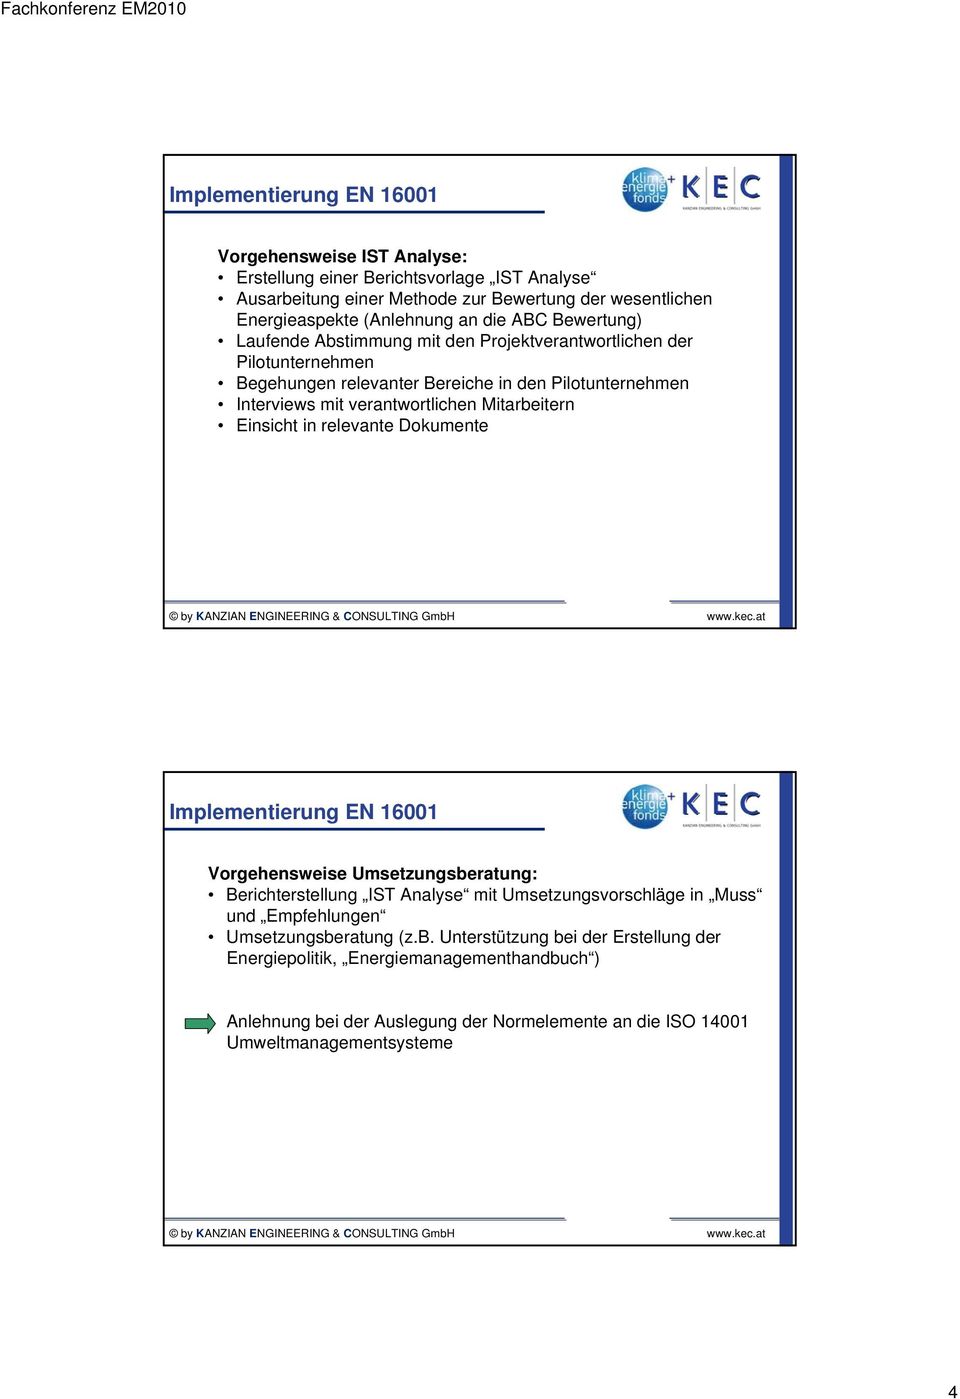 Mitarbeitern Einsicht in relevante Dokumente Implementierung EN 16001 Vorgehensweise Umsetzungsberatung: Berichterstellung IST Analyse mit Umsetzungsvorschläge in Muss und Empfehlungen